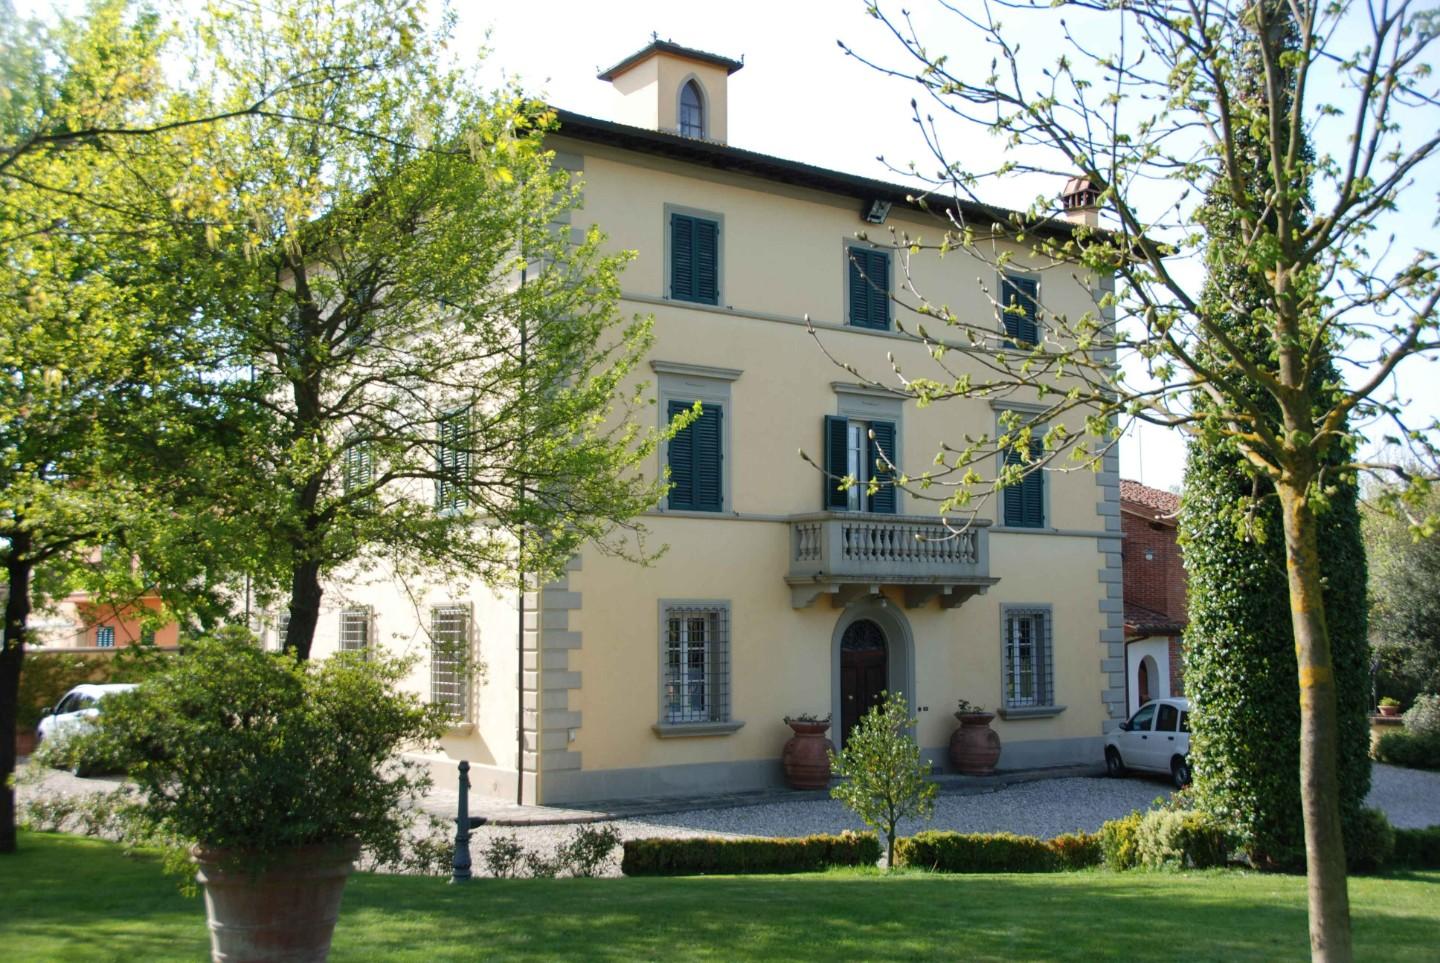 Villa con giardino, Castelfranco di Sotto galleno